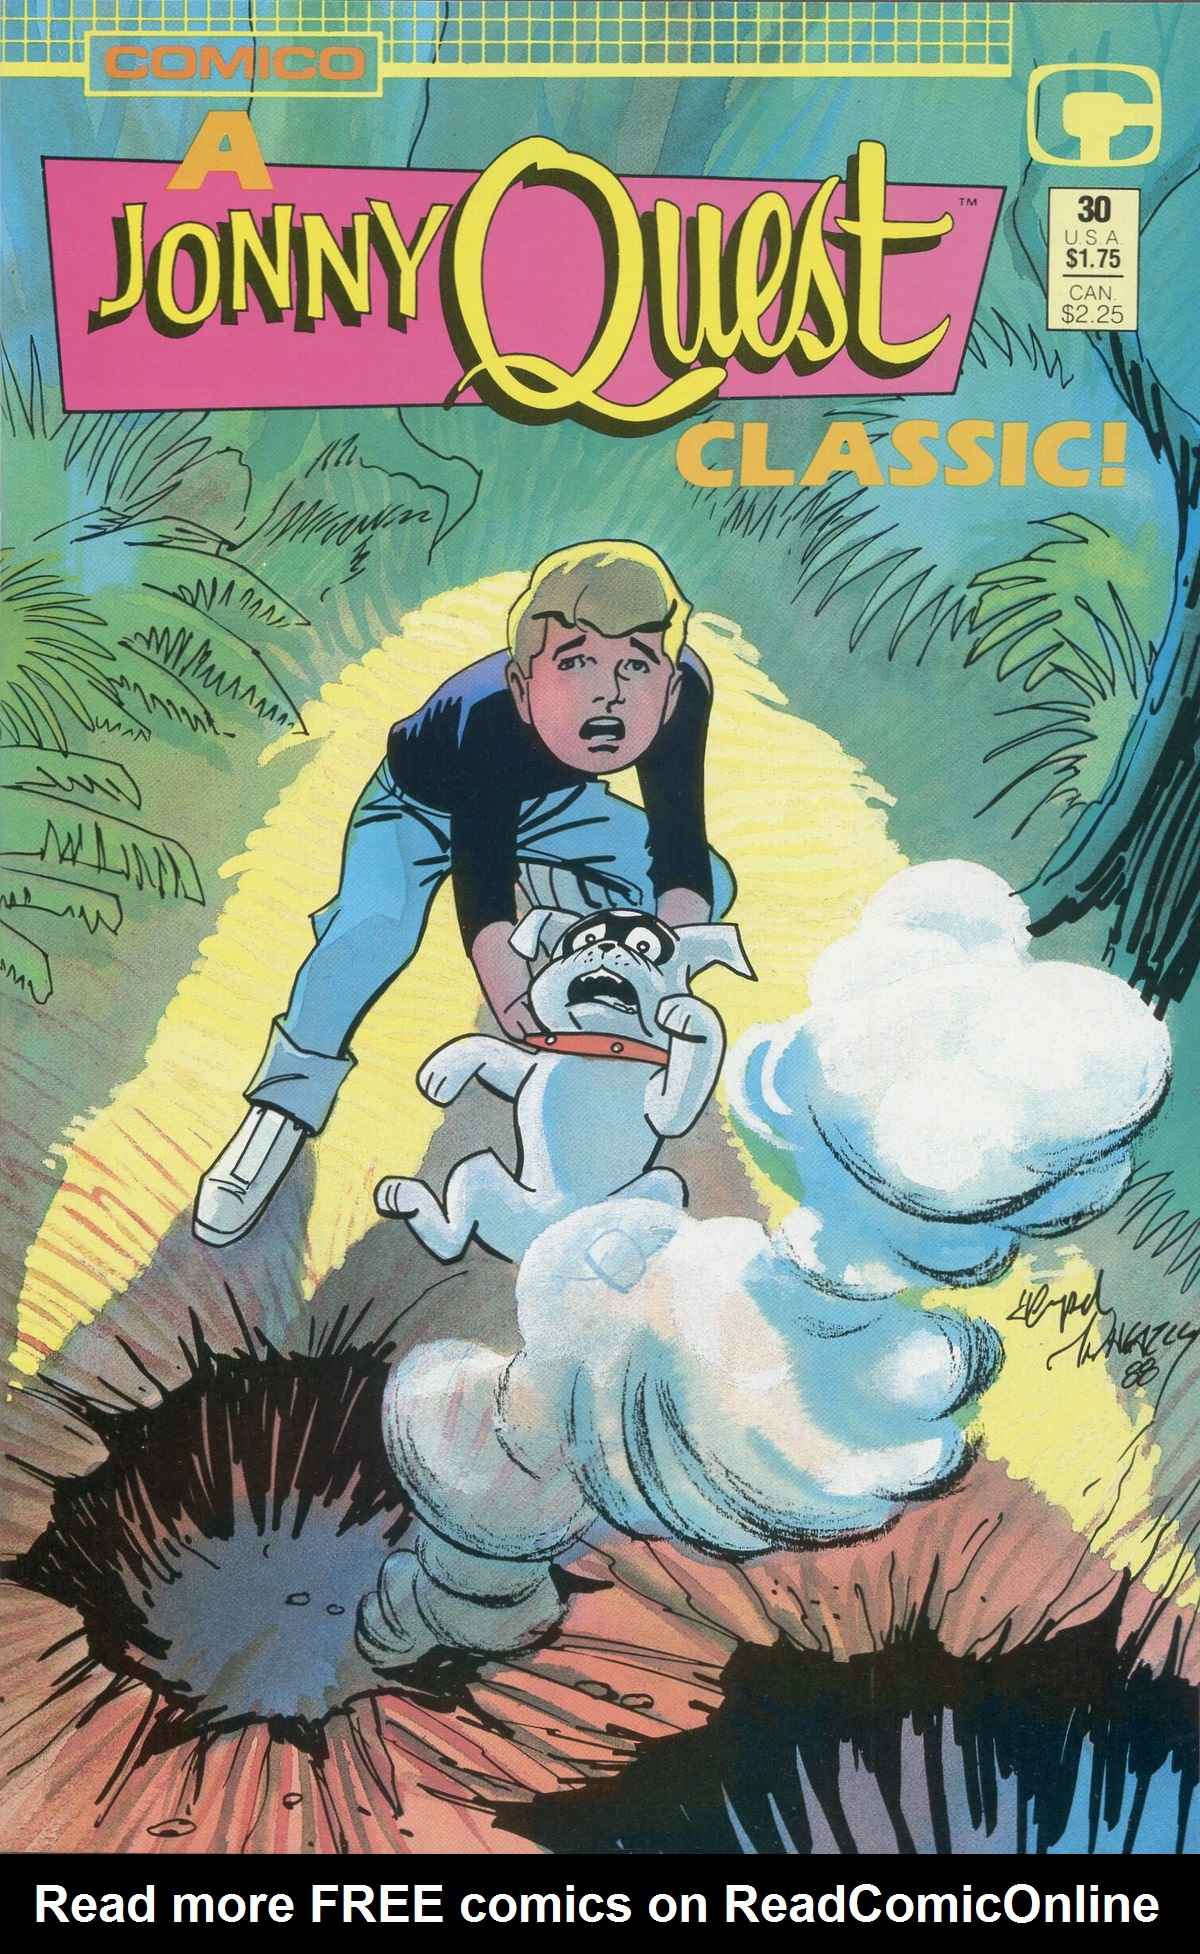 Read online Jonny Quest comic -  Issue #30 - 1